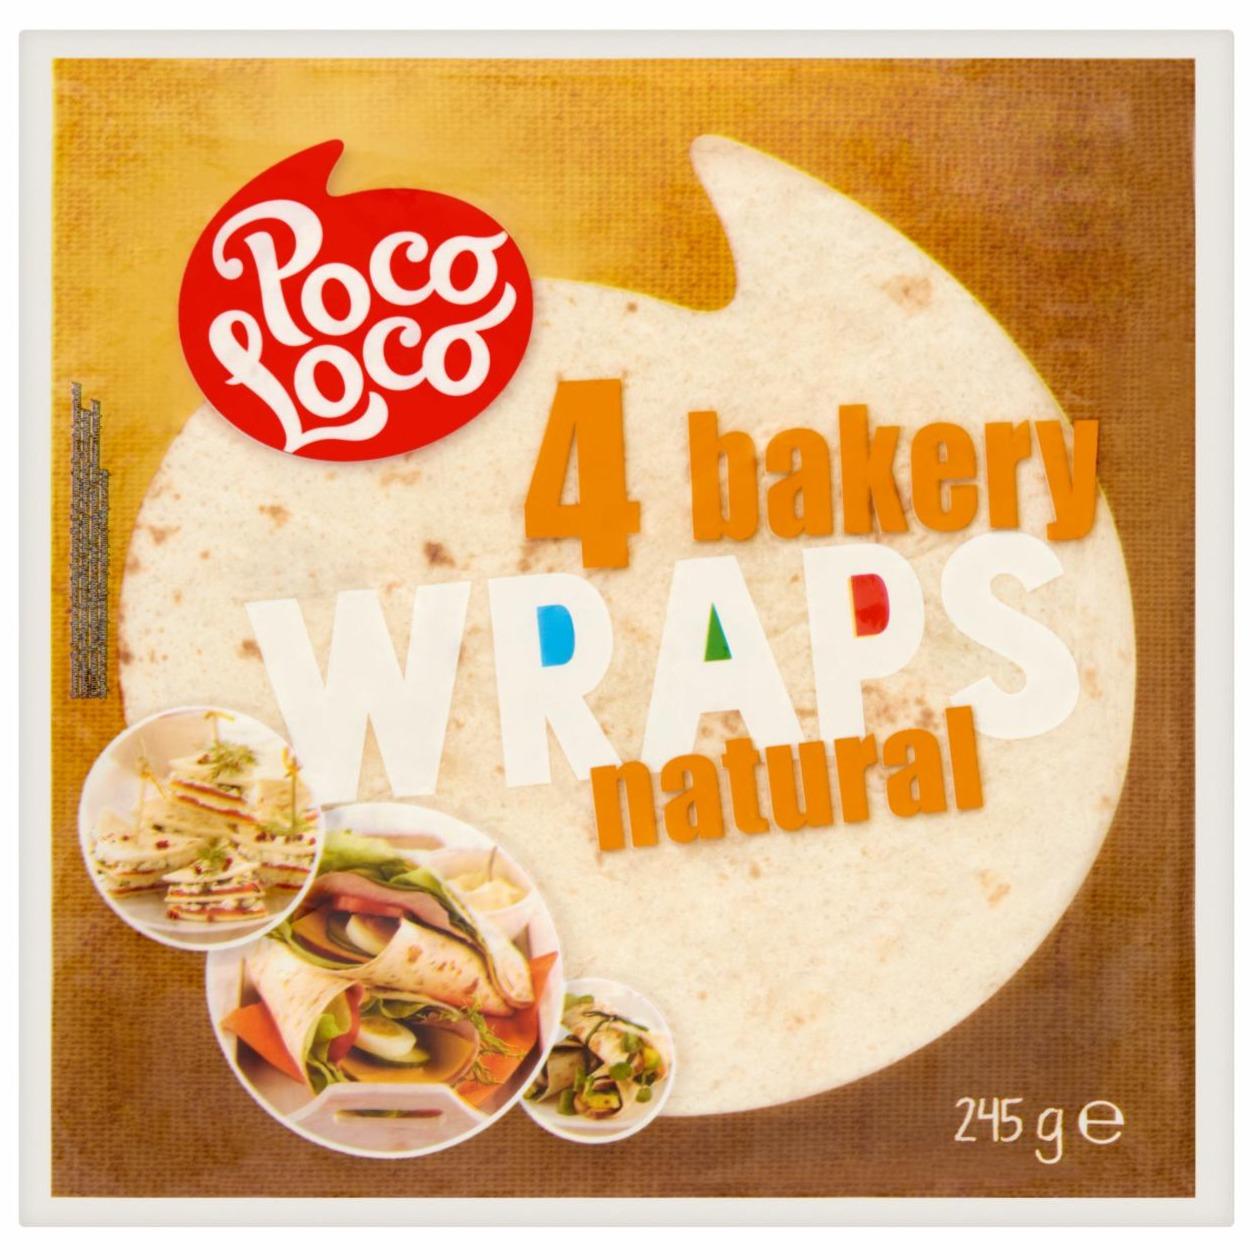 Фото - тортильи 4 bakery WRAPS originál Poco Loco